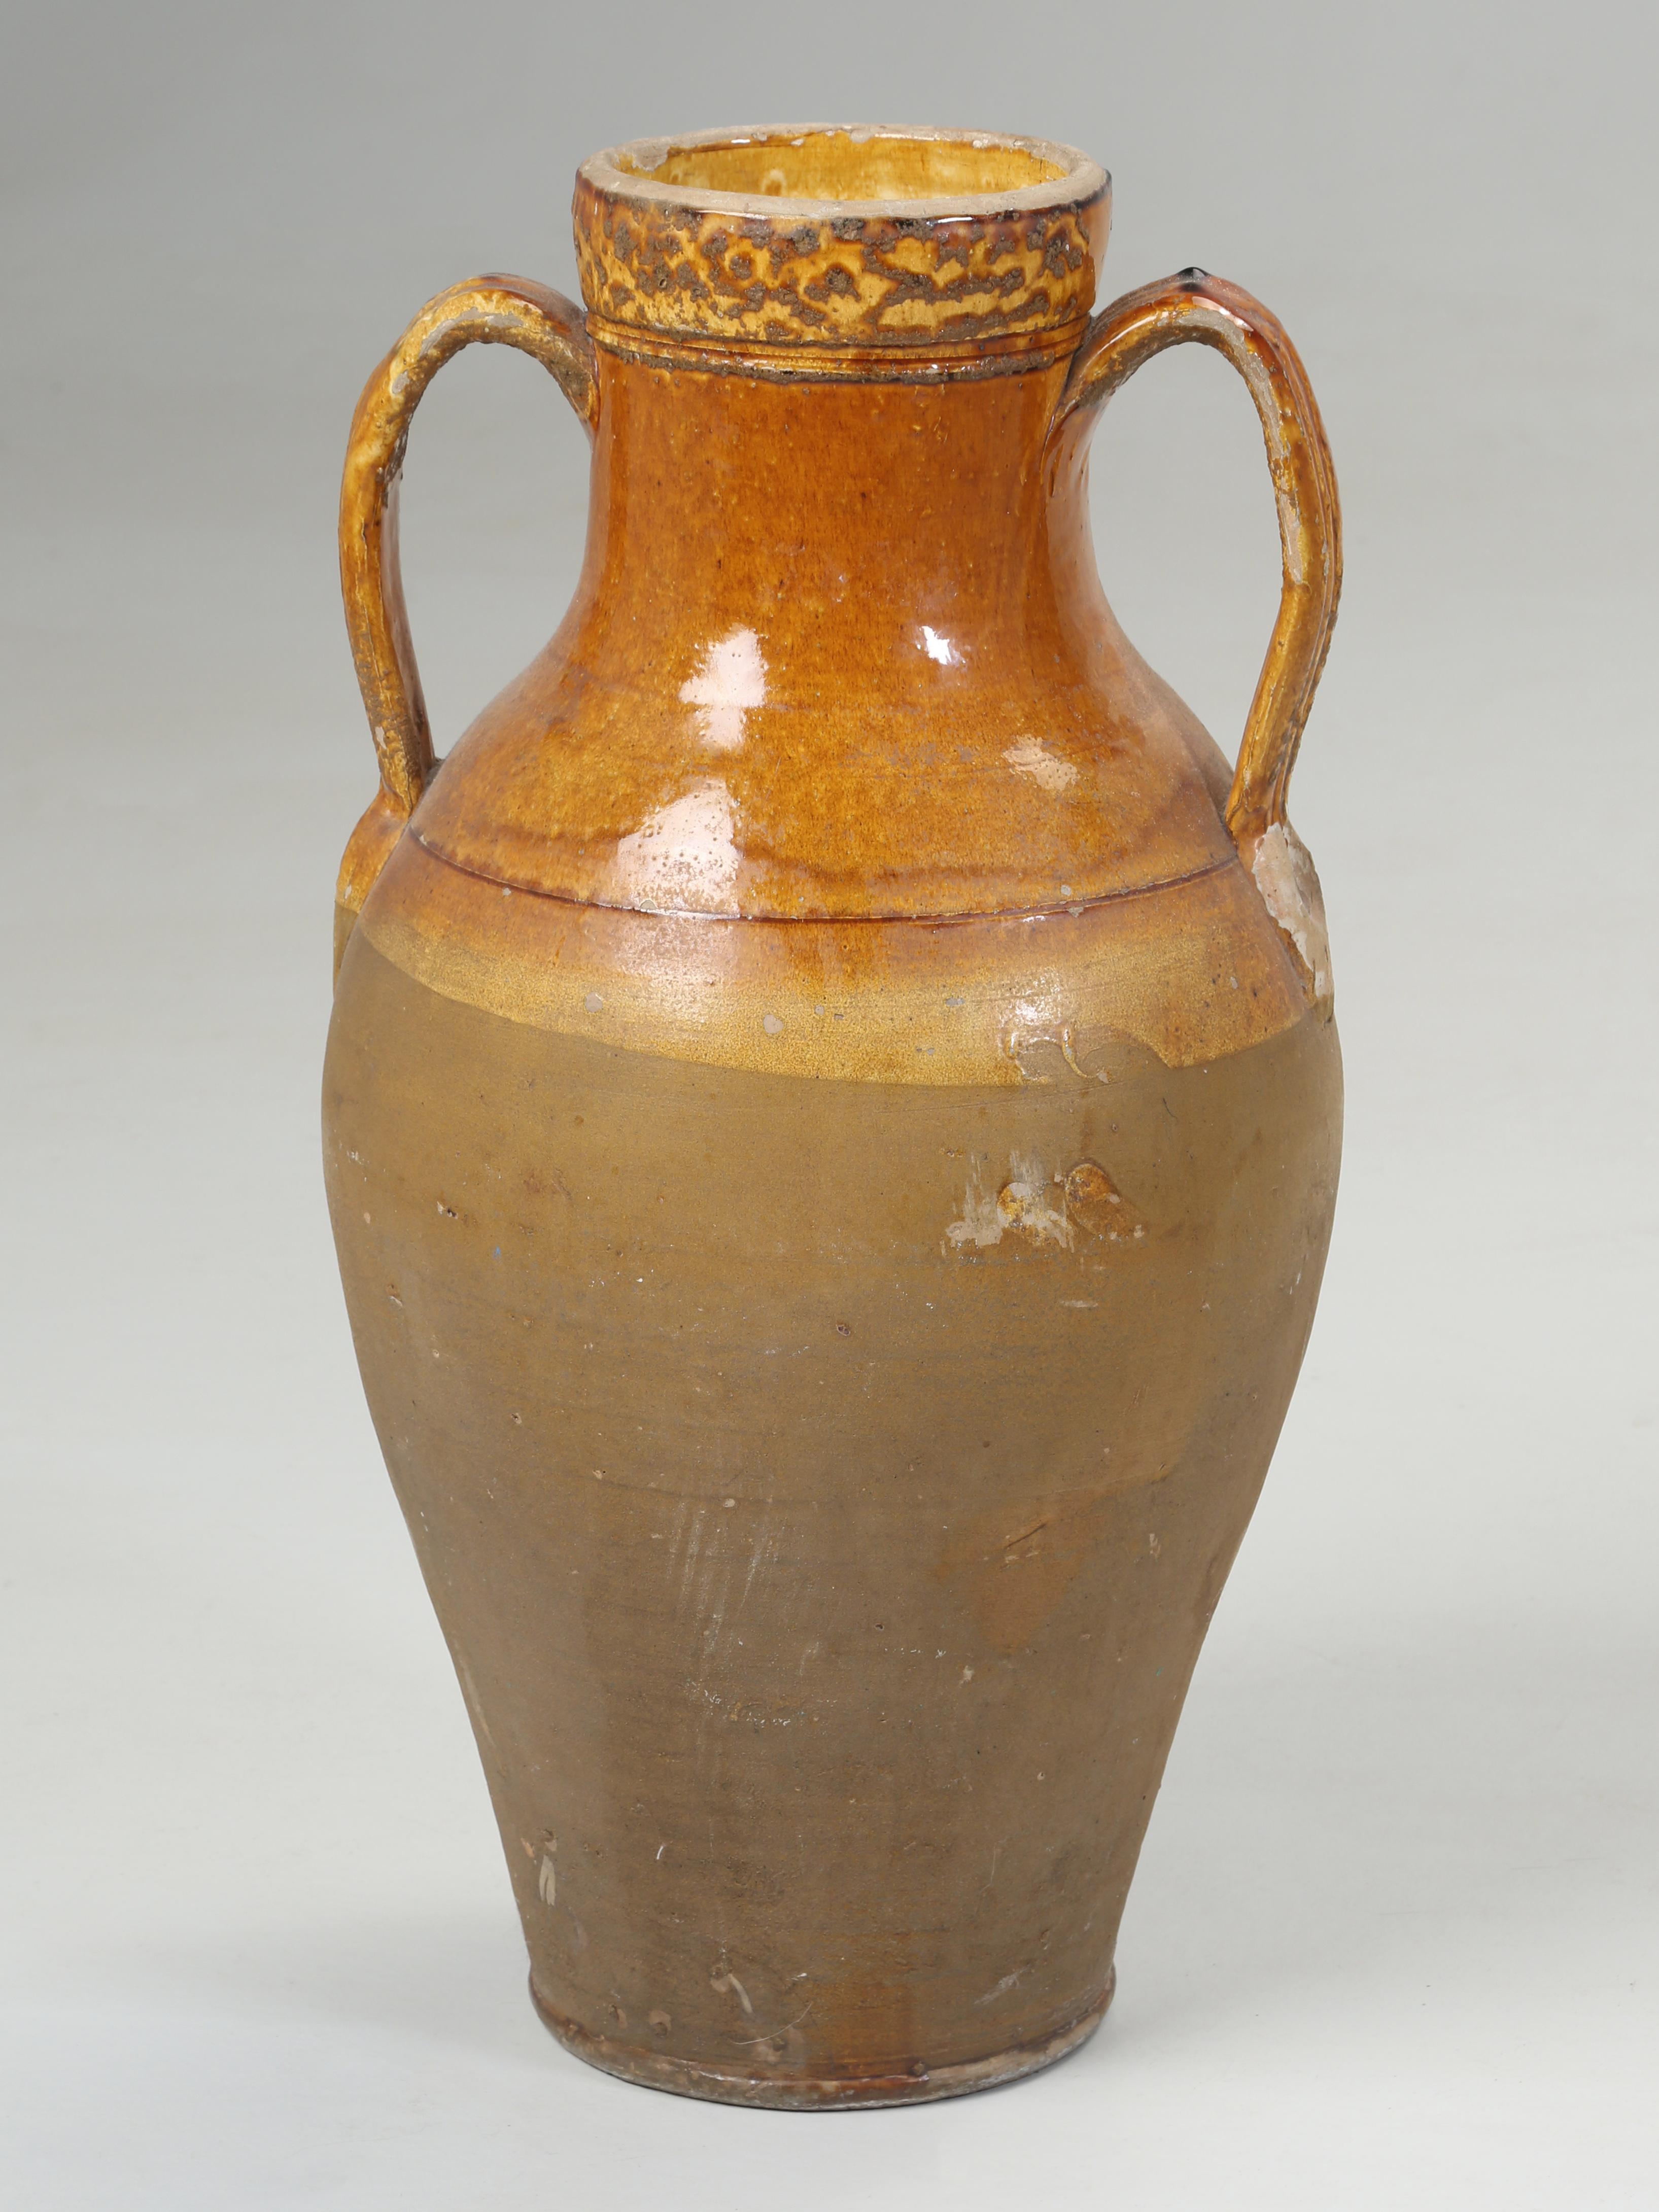 Im Handel werden sie gewöhnlich als Olivenölkrüge bezeichnet, sind aber eigentlich Amphoren, d. h. Behälter mit einer bestimmten Form und Abmessung, deren Anfänge in der Jungsteinzeit liegen, die von etwa 9000 v. Chr. bis 3500 v. Chr. dauerte.